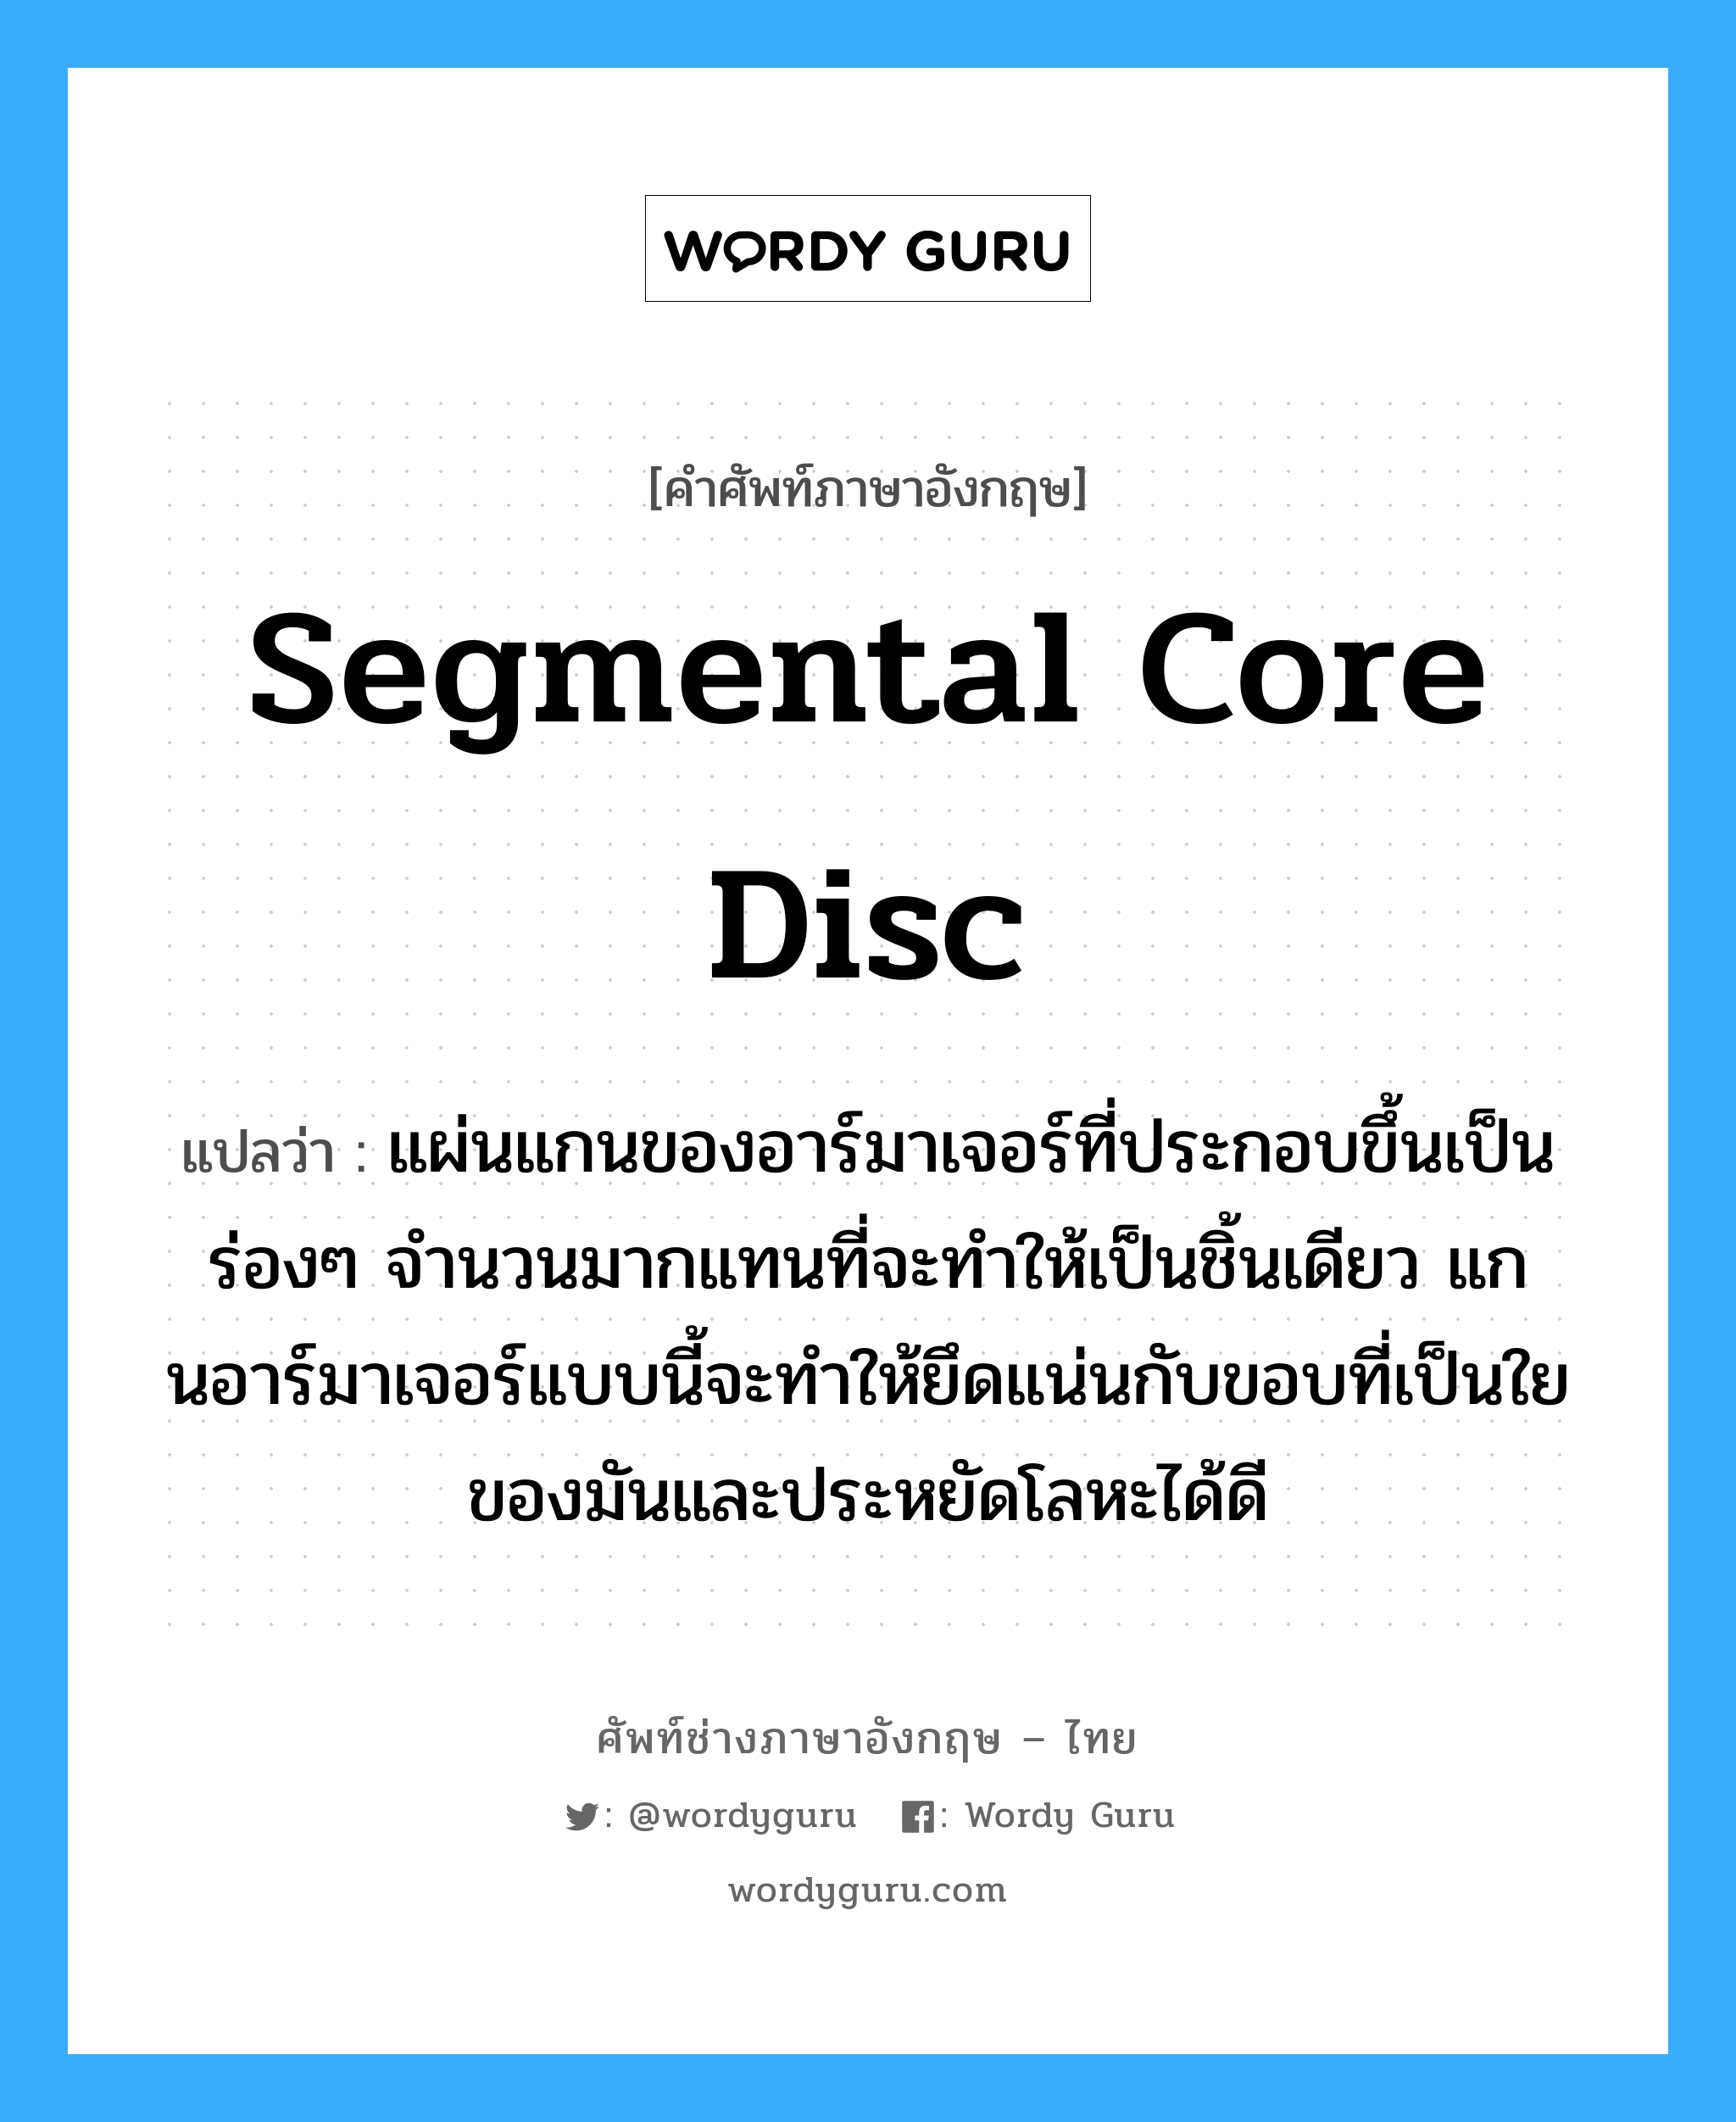 segmental core disc แปลว่า?, คำศัพท์ช่างภาษาอังกฤษ - ไทย segmental core disc คำศัพท์ภาษาอังกฤษ segmental core disc แปลว่า แผ่นแกนของอาร์มาเจอร์ที่ประกอบขึ้นเป็นร่องๆ จำนวนมากแทนที่จะทำให้เป็นชิ้นเดียว แกนอาร์มาเจอร์แบบนี้จะทำให้ยึดแน่นกับขอบที่เป็นใยของมันและประหยัดโลหะได้ดี